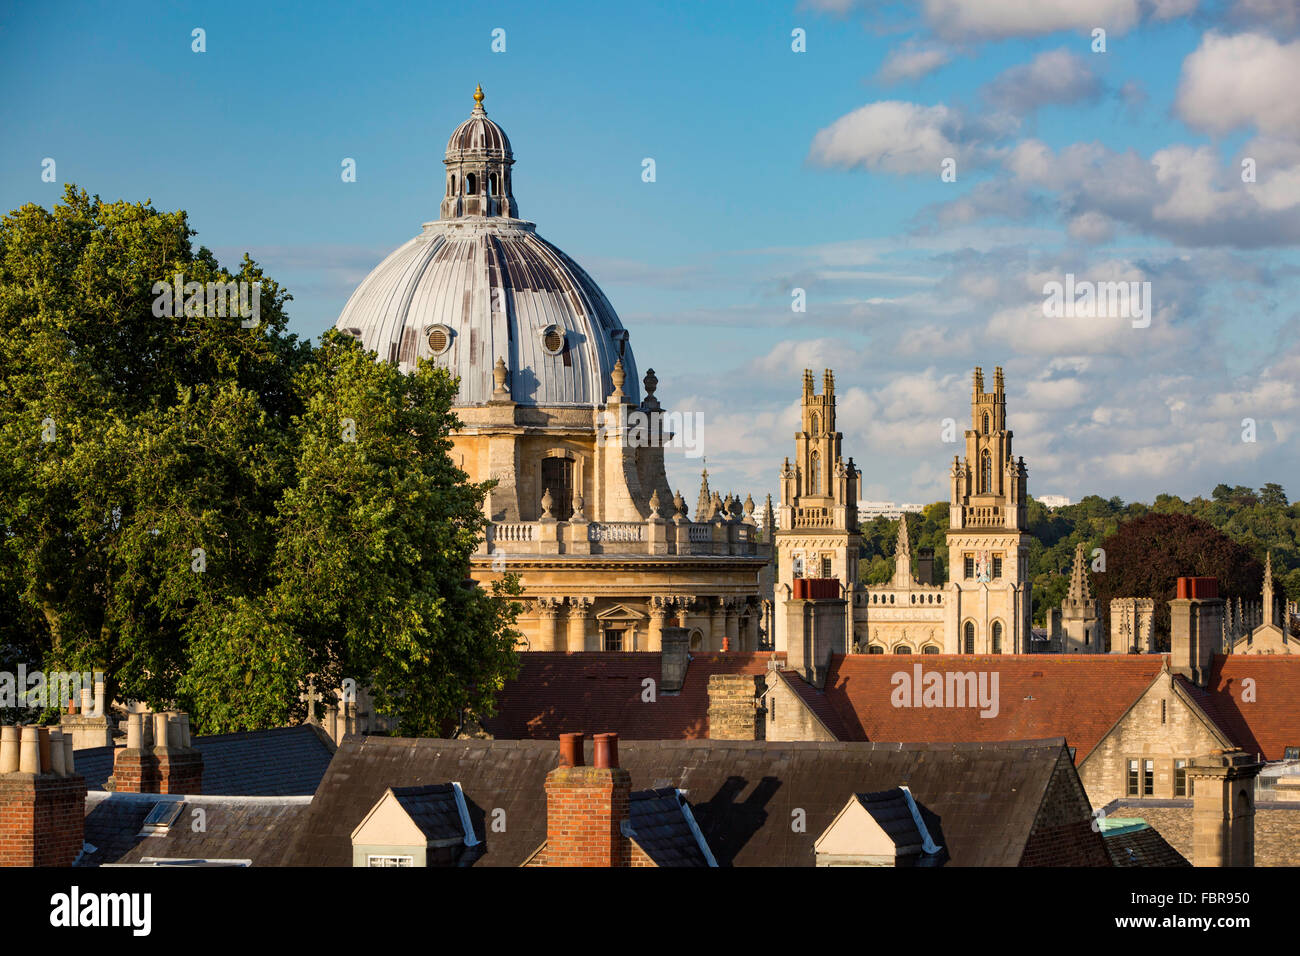 Tetto a vista su radcliffe camera e gli edifici di Oxford, oxfordshire, England, Regno Unito Foto Stock